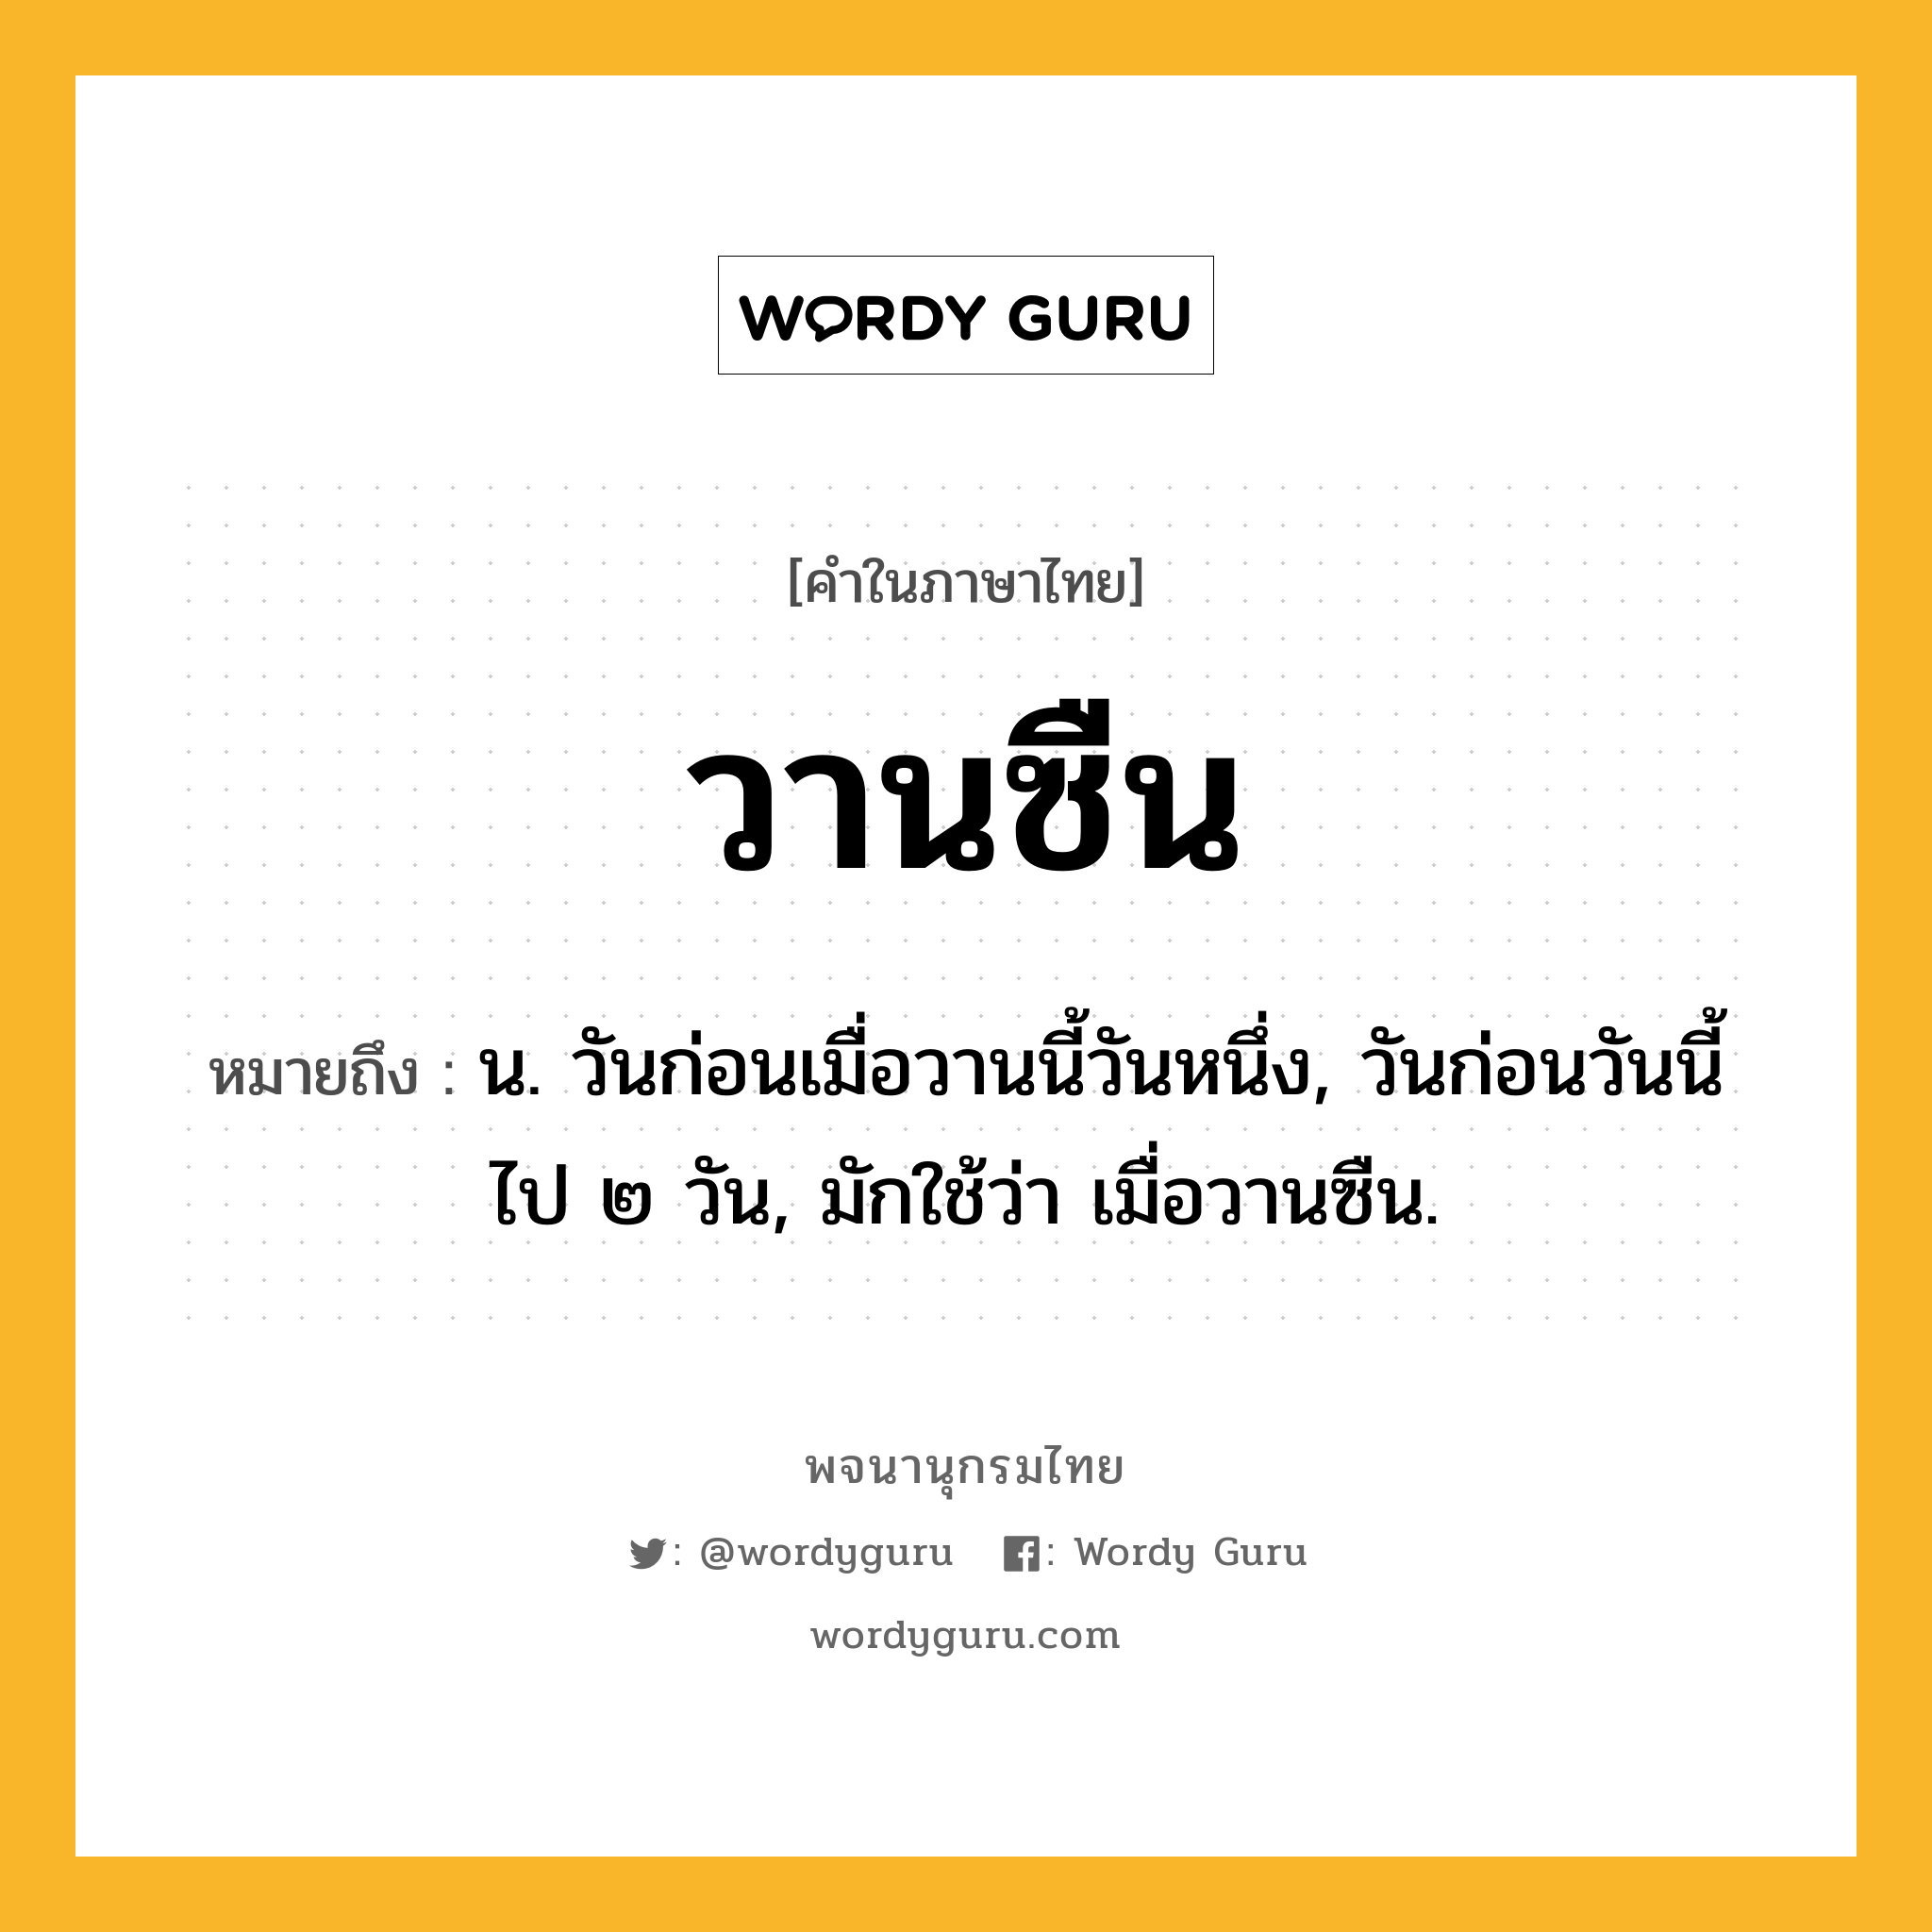 วานซืน หมายถึงอะไร?, คำในภาษาไทย วานซืน หมายถึง น. วันก่อนเมื่อวานนี้วันหนึ่ง, วันก่อนวันนี้ไป ๒ วัน, มักใช้ว่า เมื่อวานซืน.